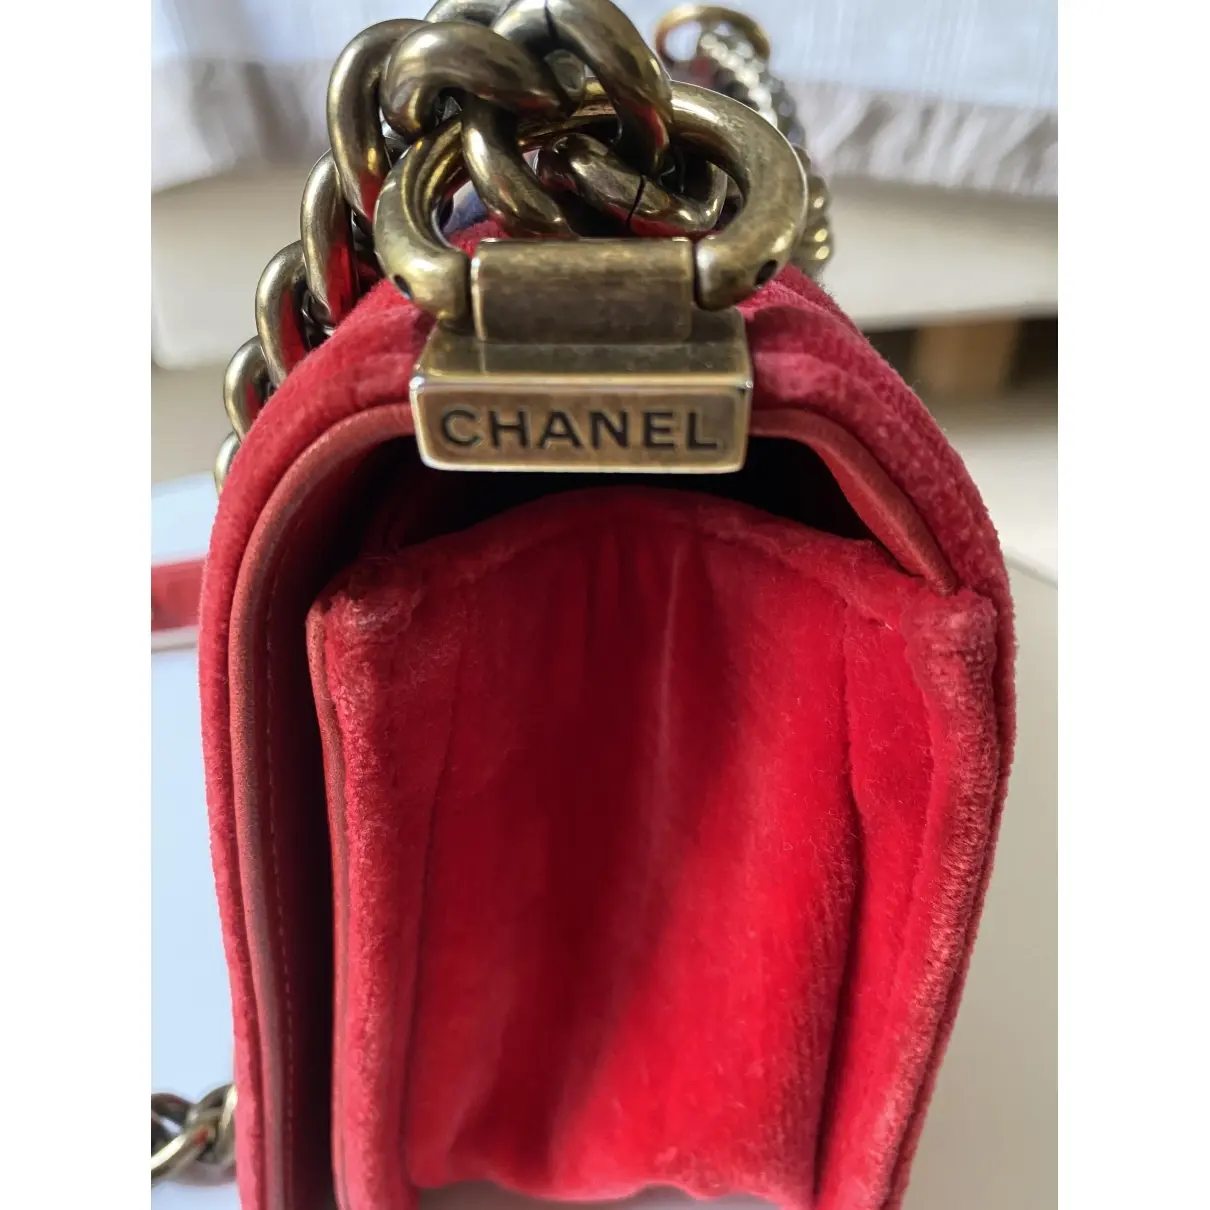 Chanel Boy velvet handbag for sale